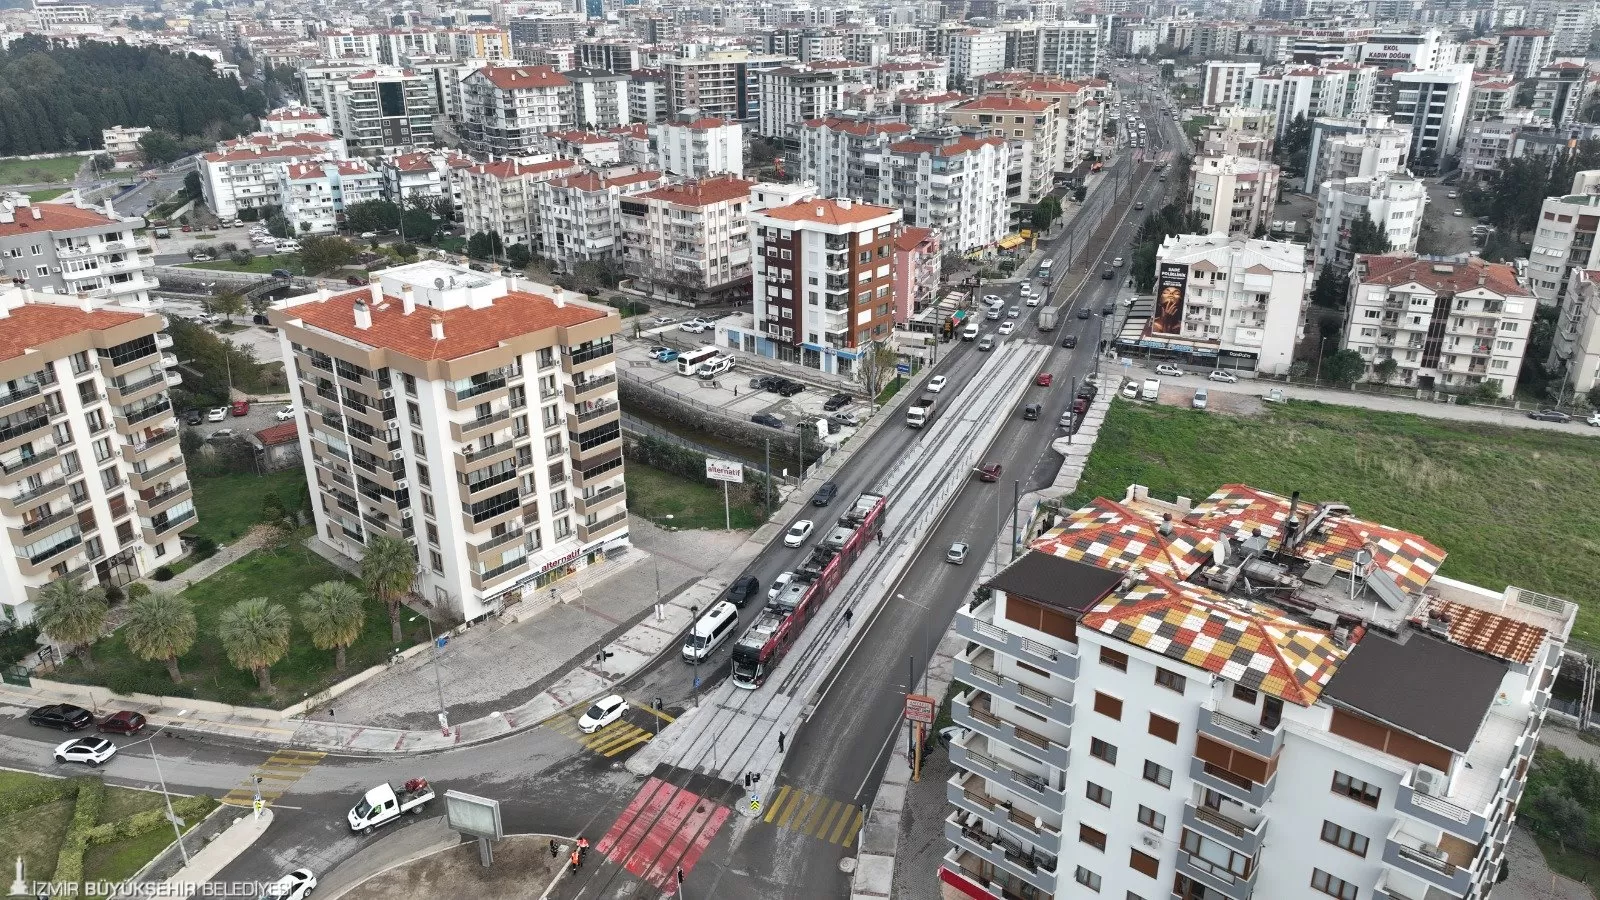 İzmir Büyükşehir Belediyesi'nin raylı sistem yatırımları kapsamında yapımı devam eden Çiğli Tramvayı, 27 Ocak'ta hizmete açılıyor.